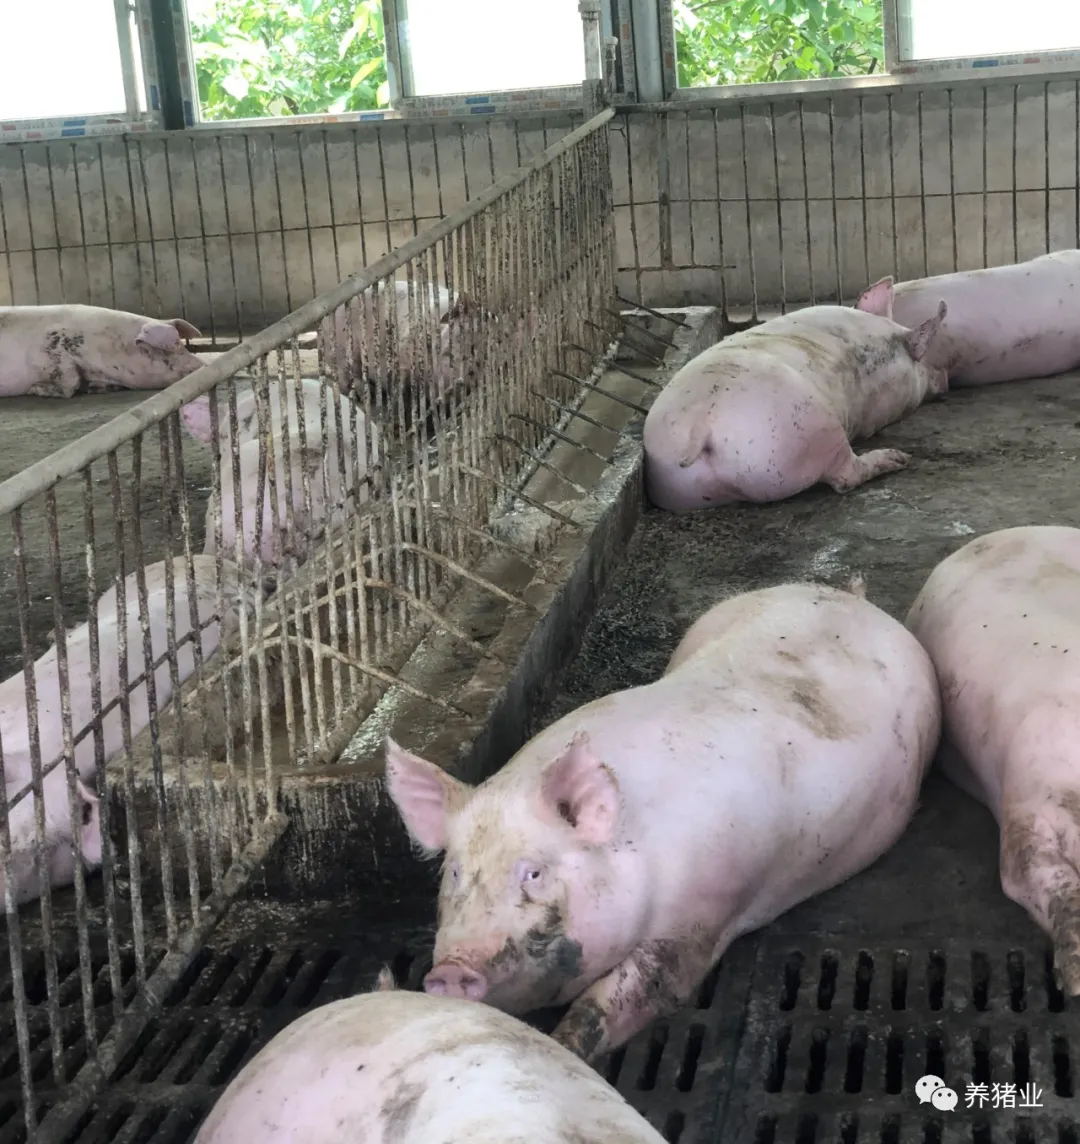 如何评估益生菌对猪的贡献？益生菌市场火热的背后要冷静思考